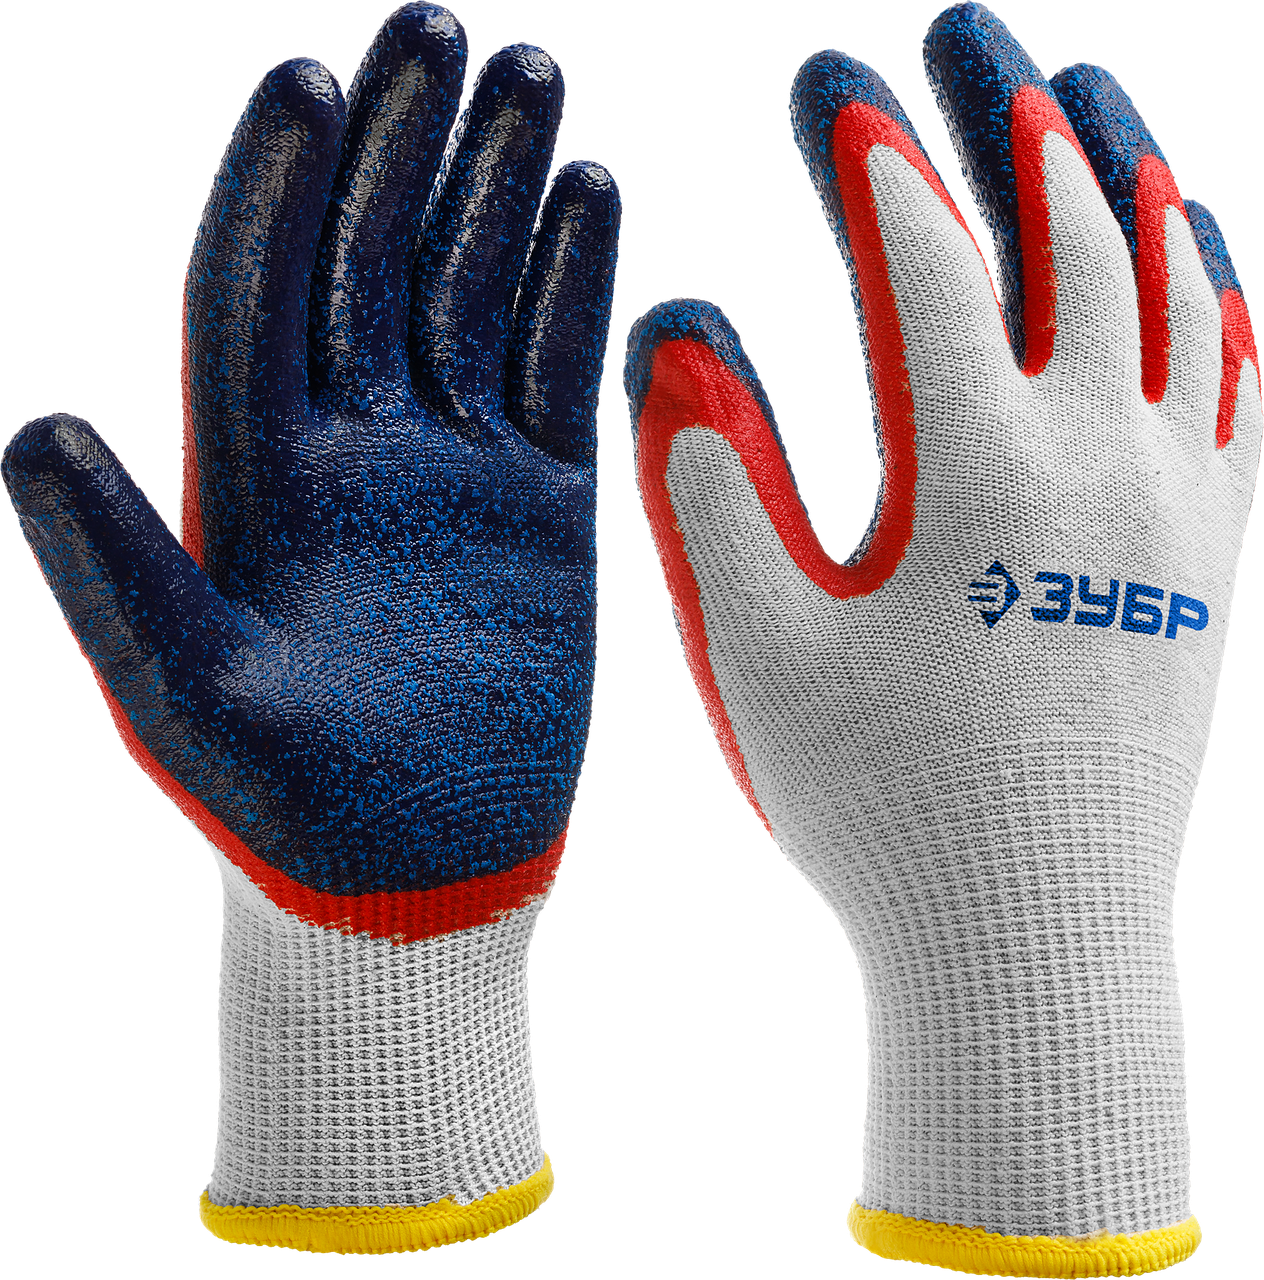 ЗУБР ЗАХВАТ-2, размер S-M, перчатки с двойным текстурированным нитриловым обливом